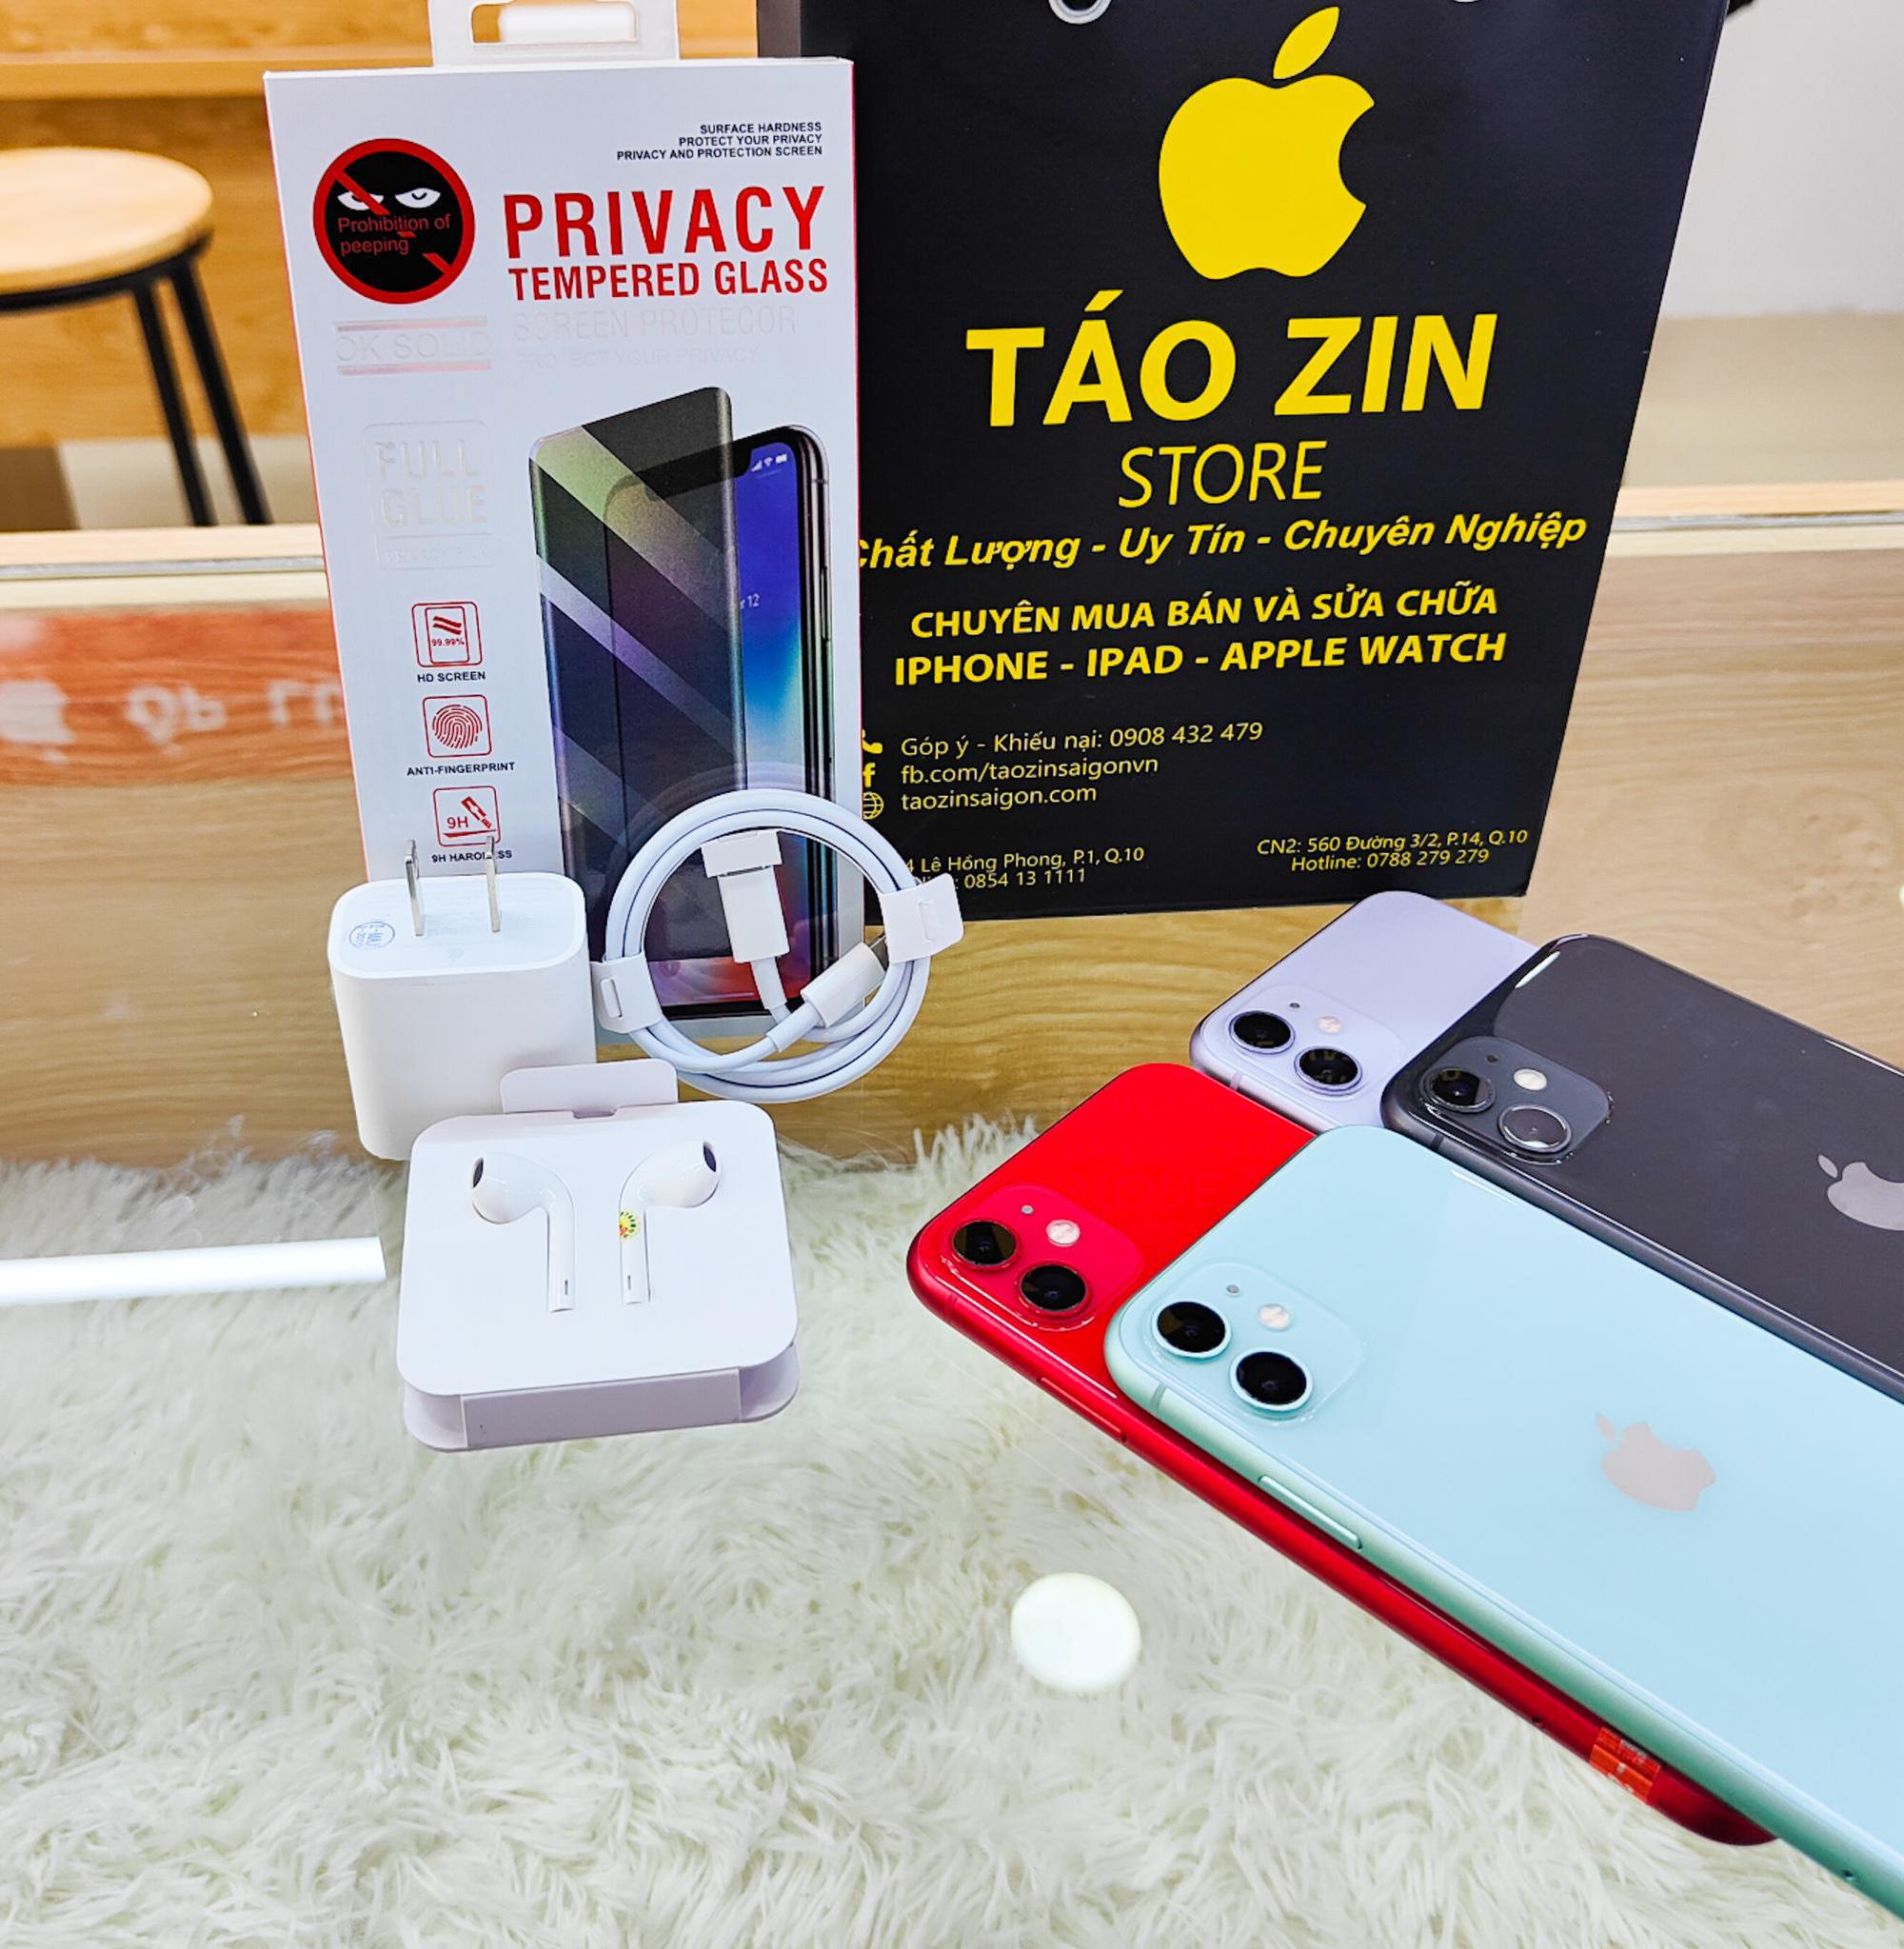 iPhone 11, 11 Pro, iPhone 11 Pro Max giảm sốc 1 triệu đồng tại Táo Zin, trả góp 0%, thu cũ đổi mới - Ảnh 1.